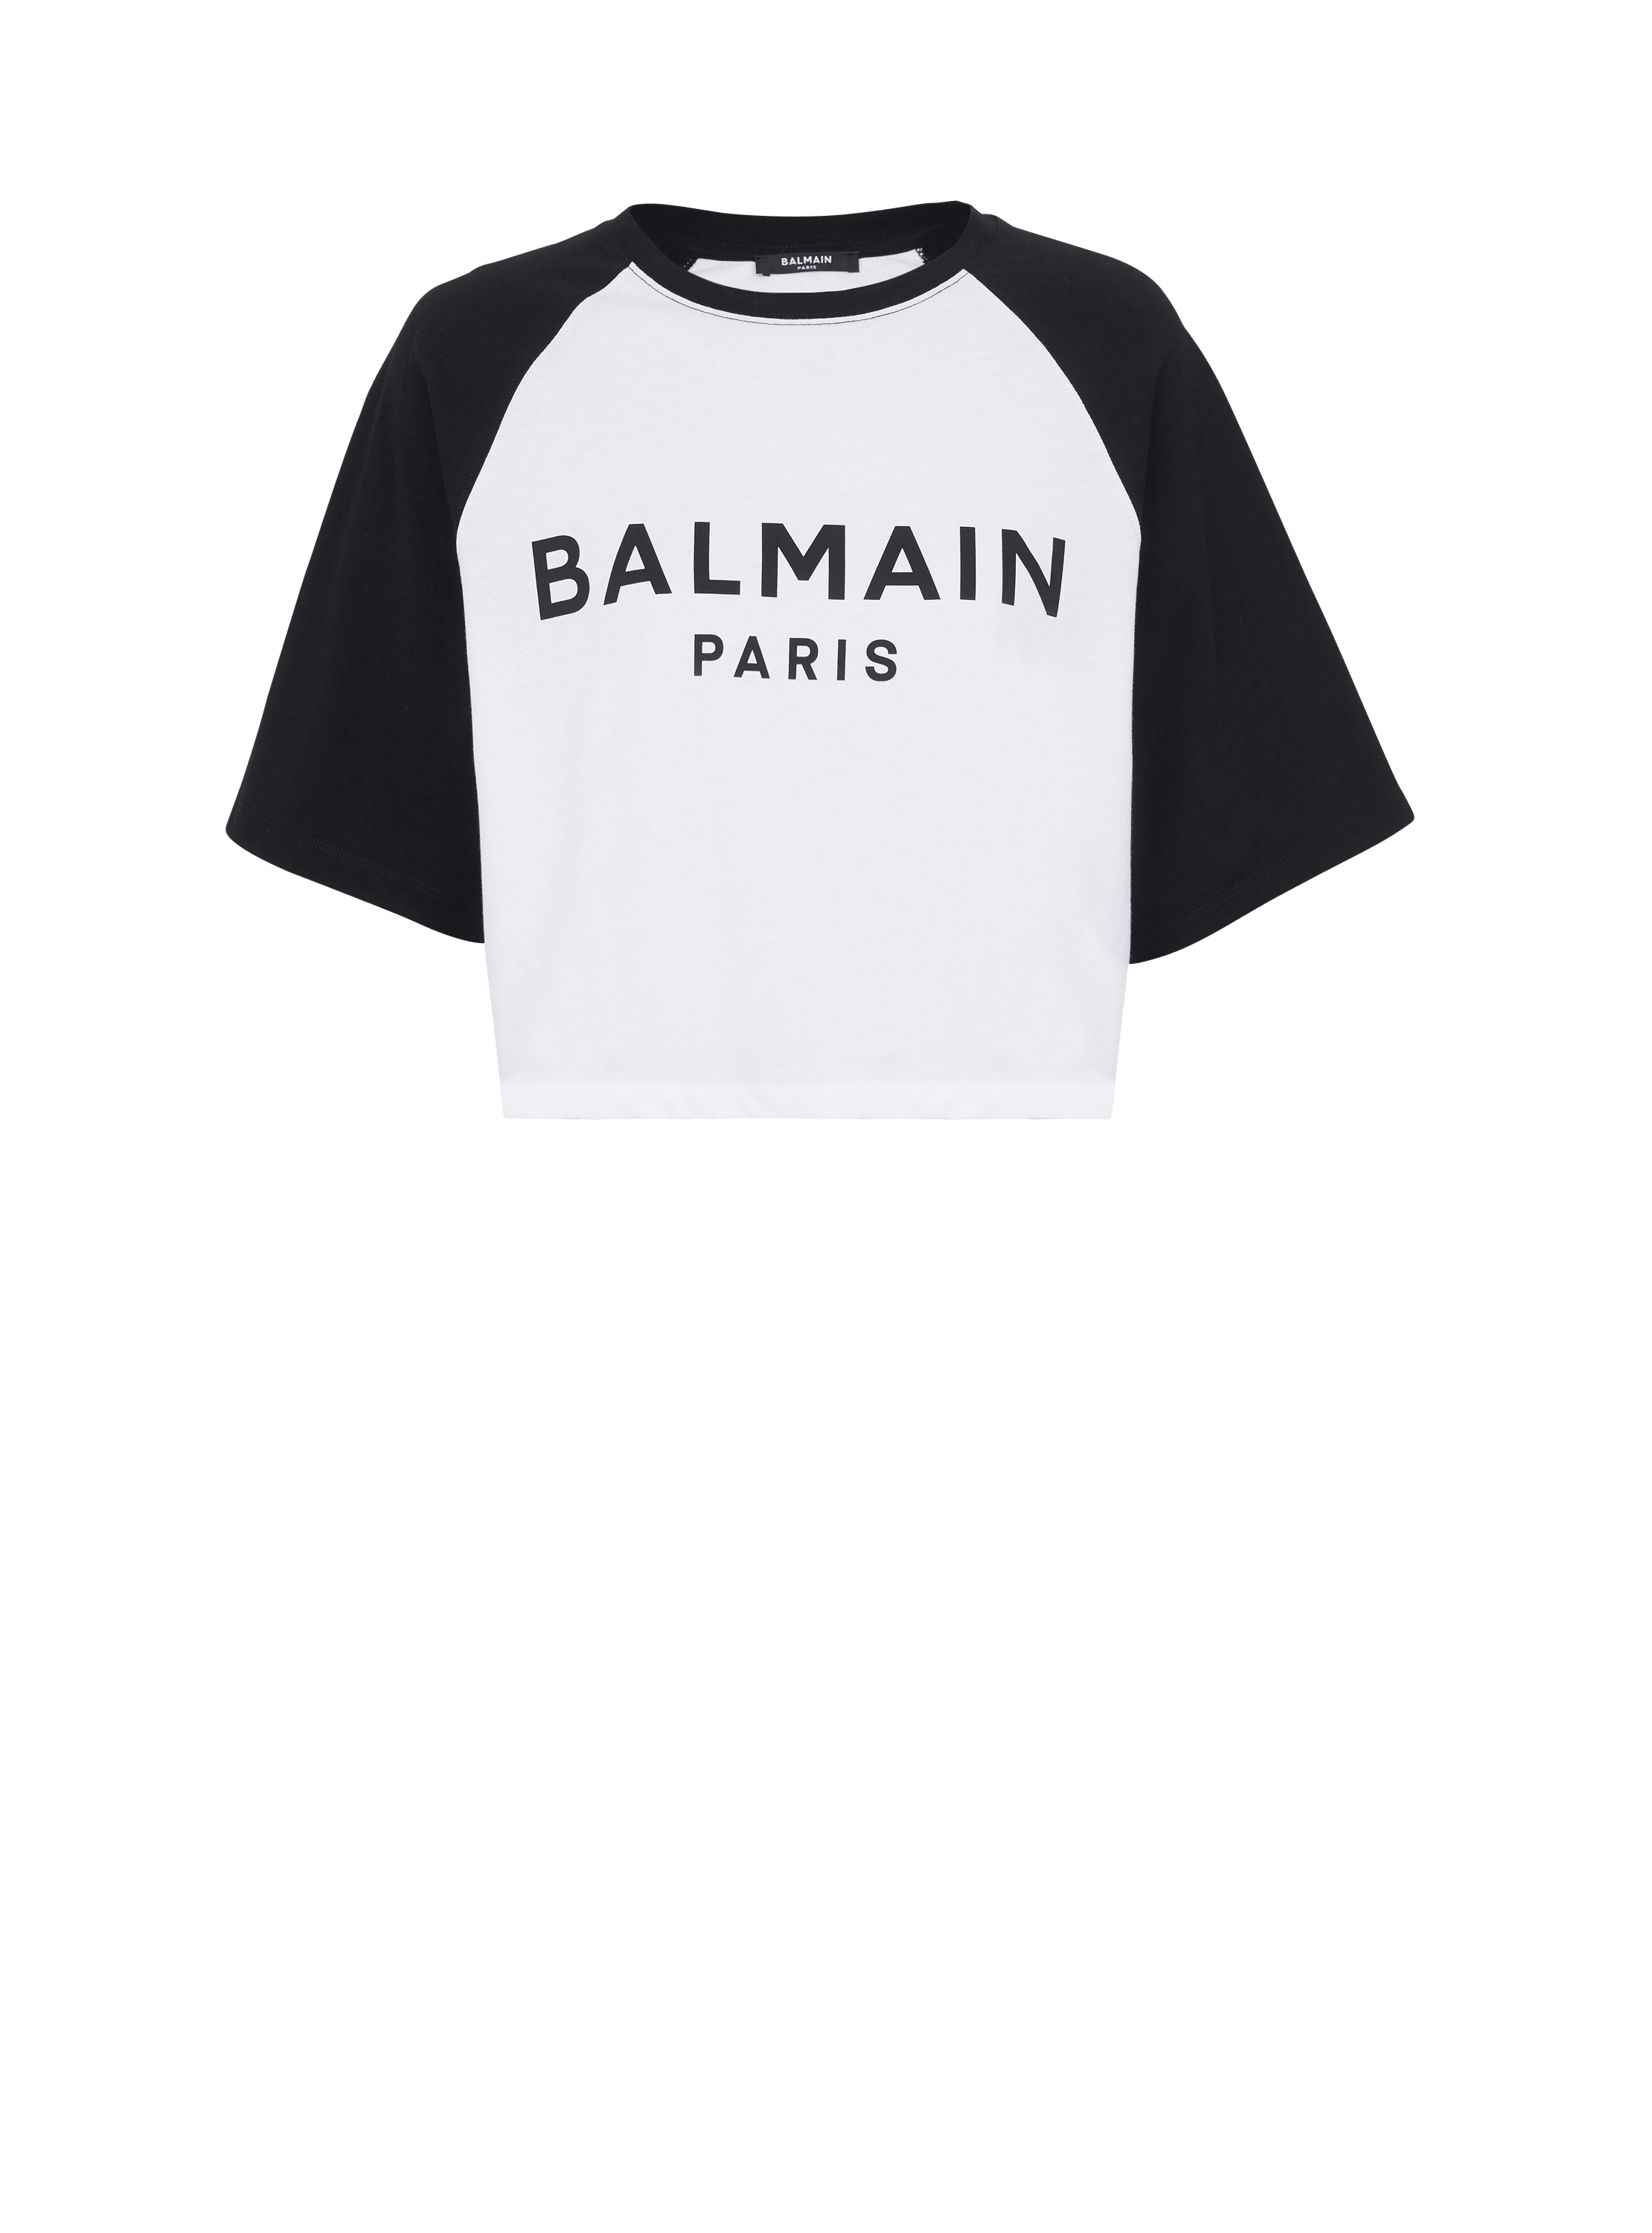 Balmain Paris T-Shirt, schwarz, hi-res